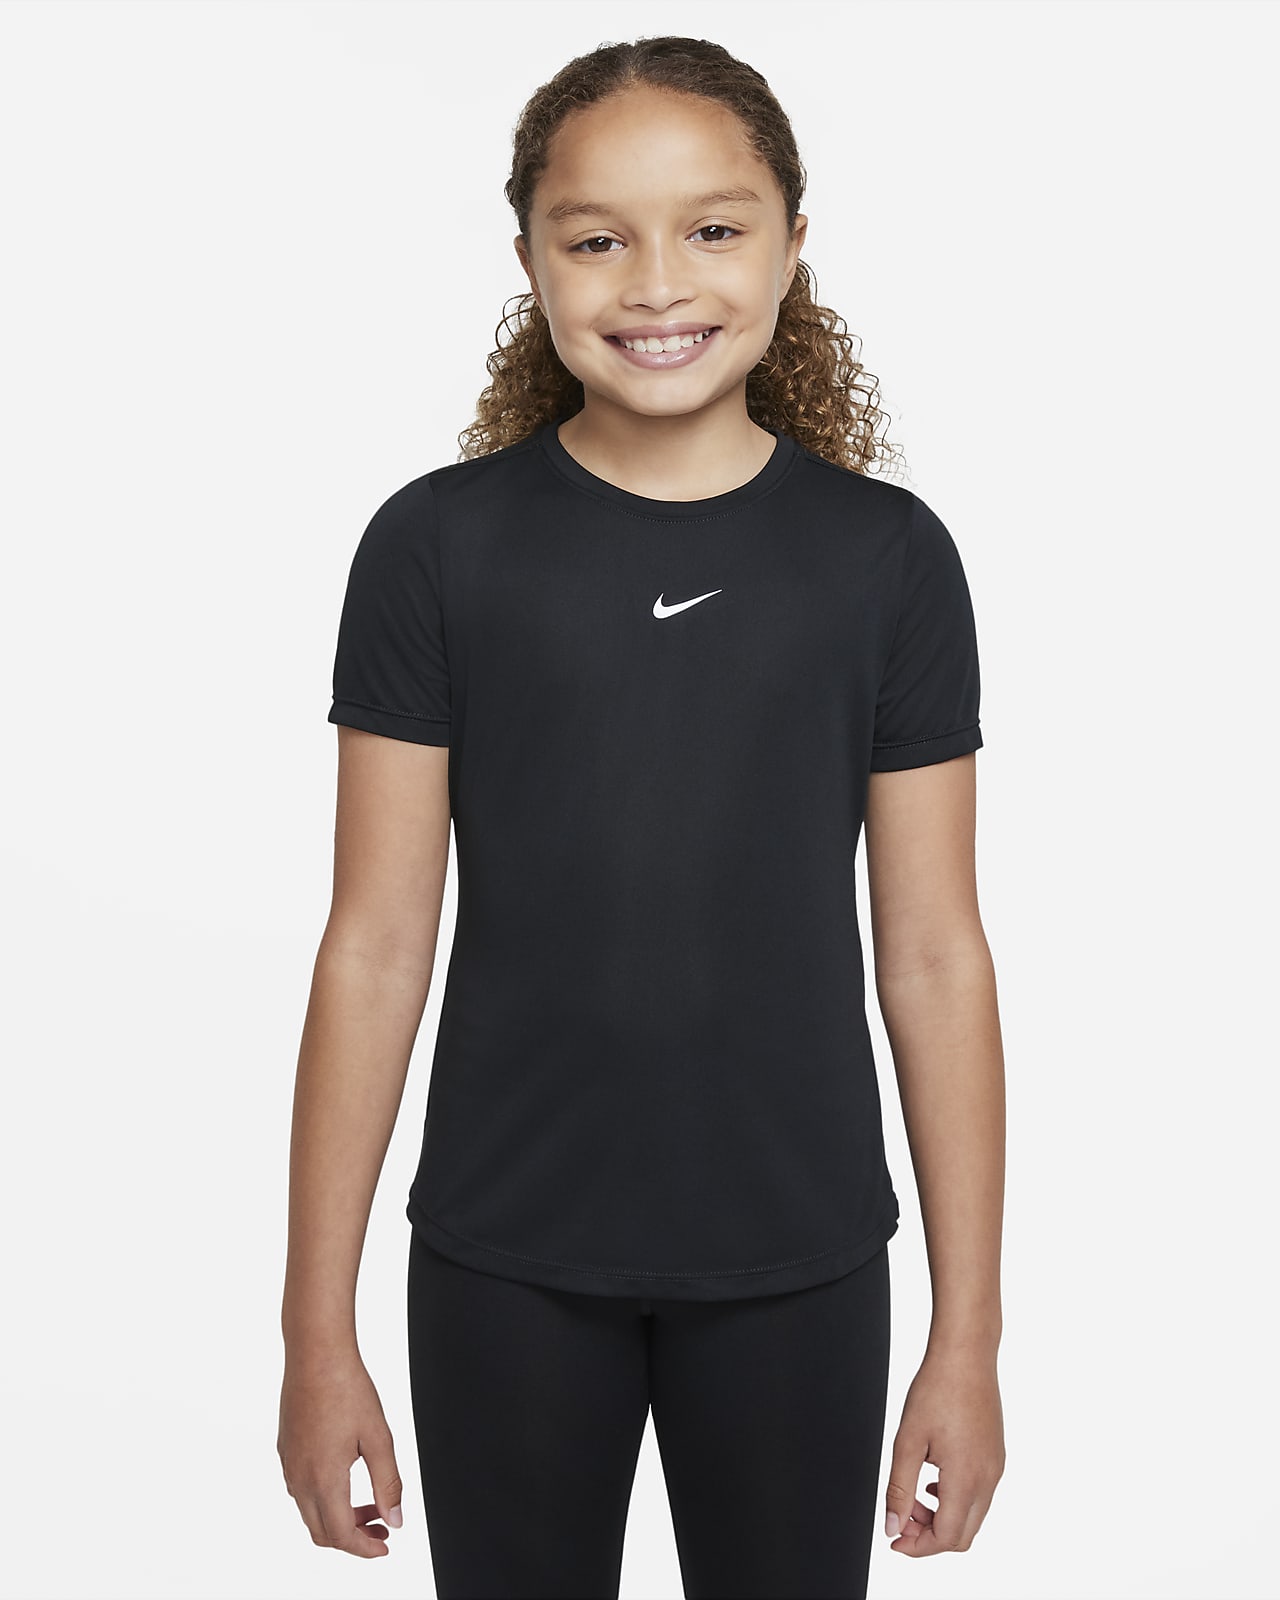 Nike One Kurzarm-Oberteil für ältere Kinder (Mädchen)